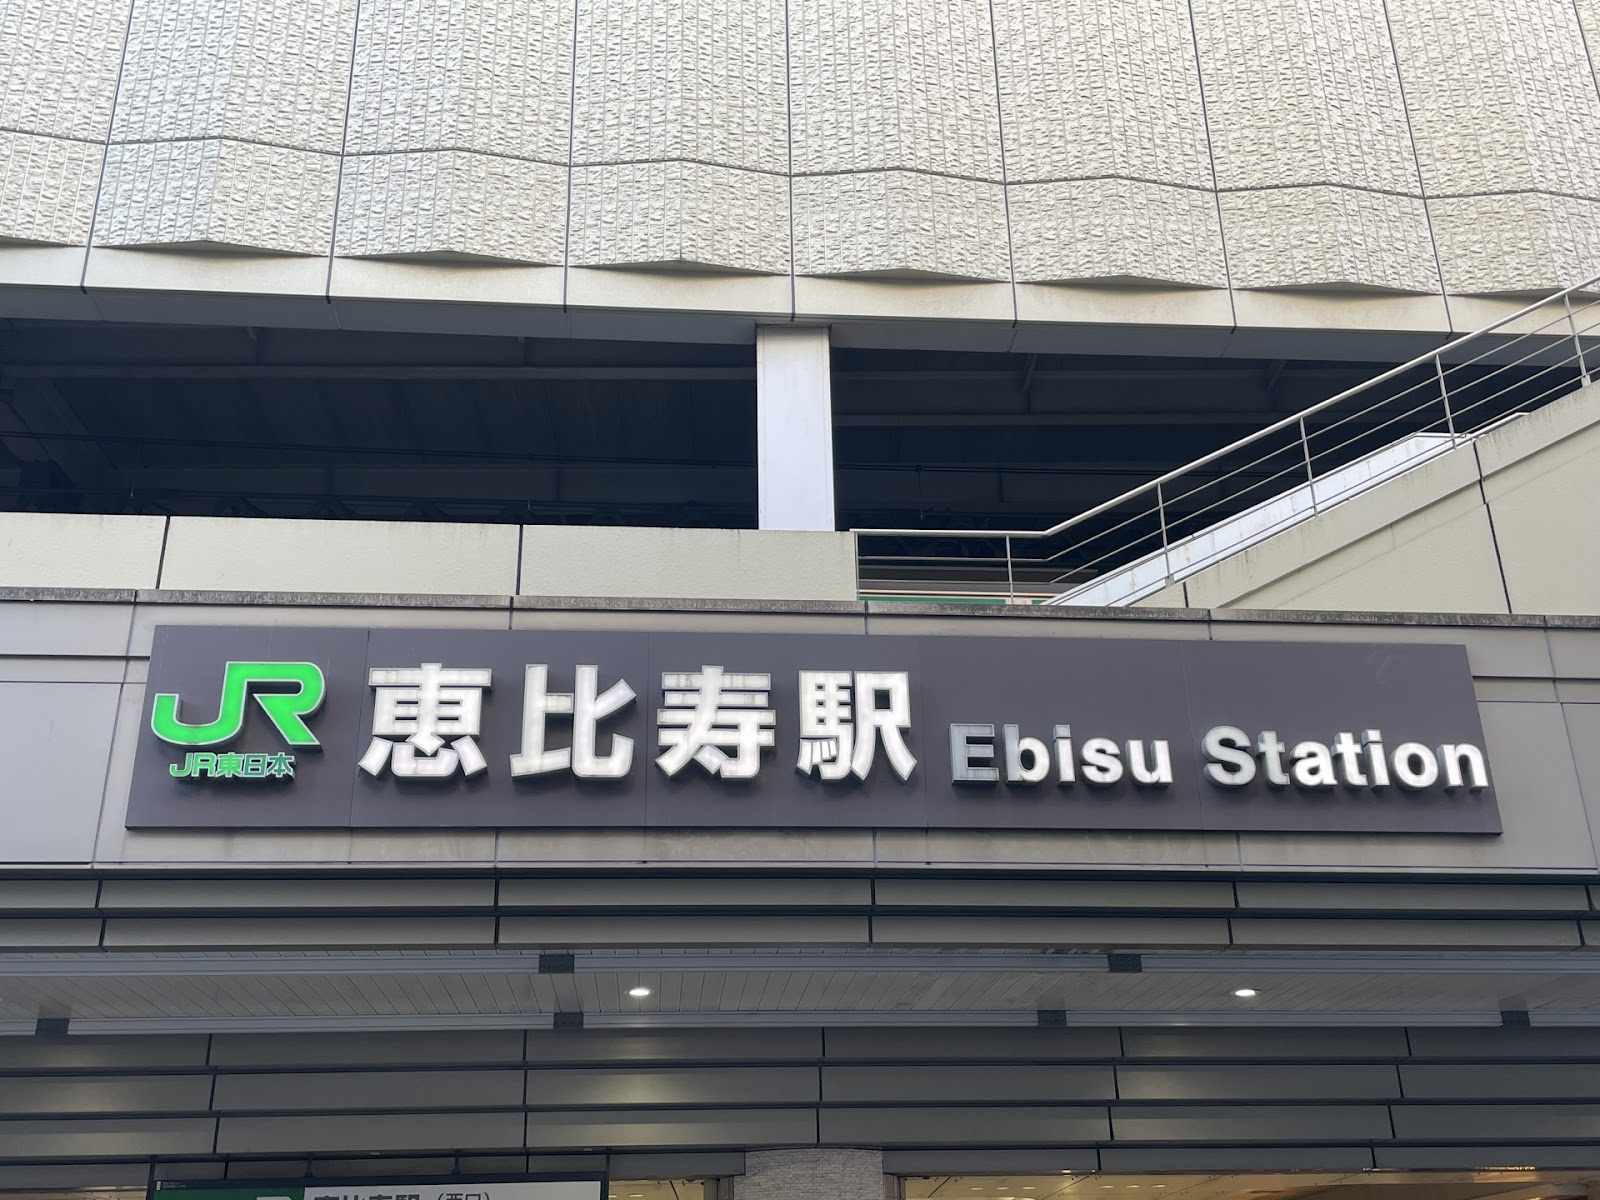 恵比寿駅周辺のスマホ充電・モバイルバッテリーレンタルスポット